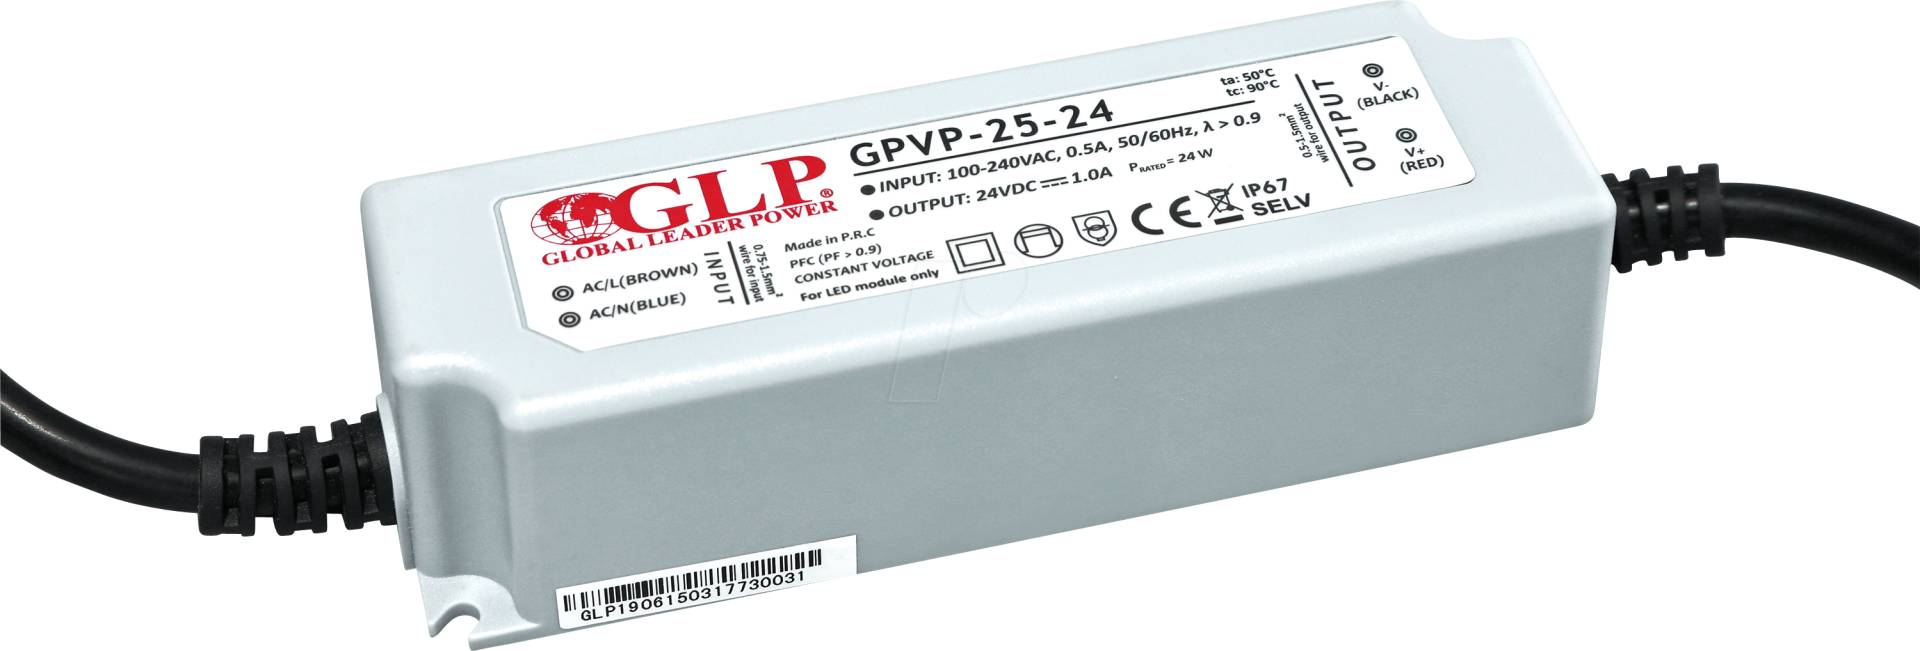 GPVP-25-24 - LED-Netzteil, 25 W, 24 V DC, 1 A, IP67, PFC Funktion von GLOBAL LEADER POWER